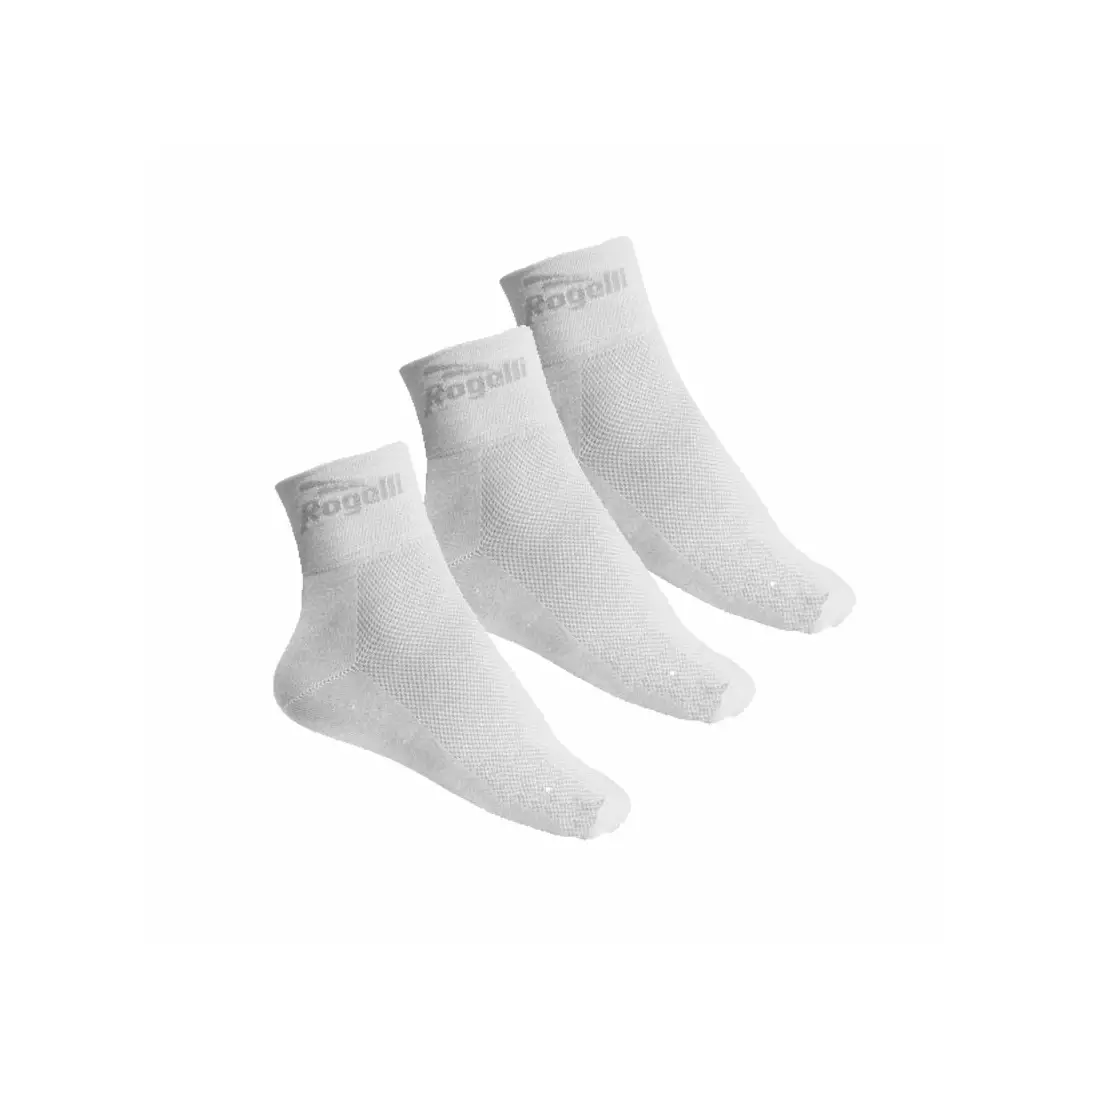 ROGELLI 3-pack cycling sports socks PROMO White